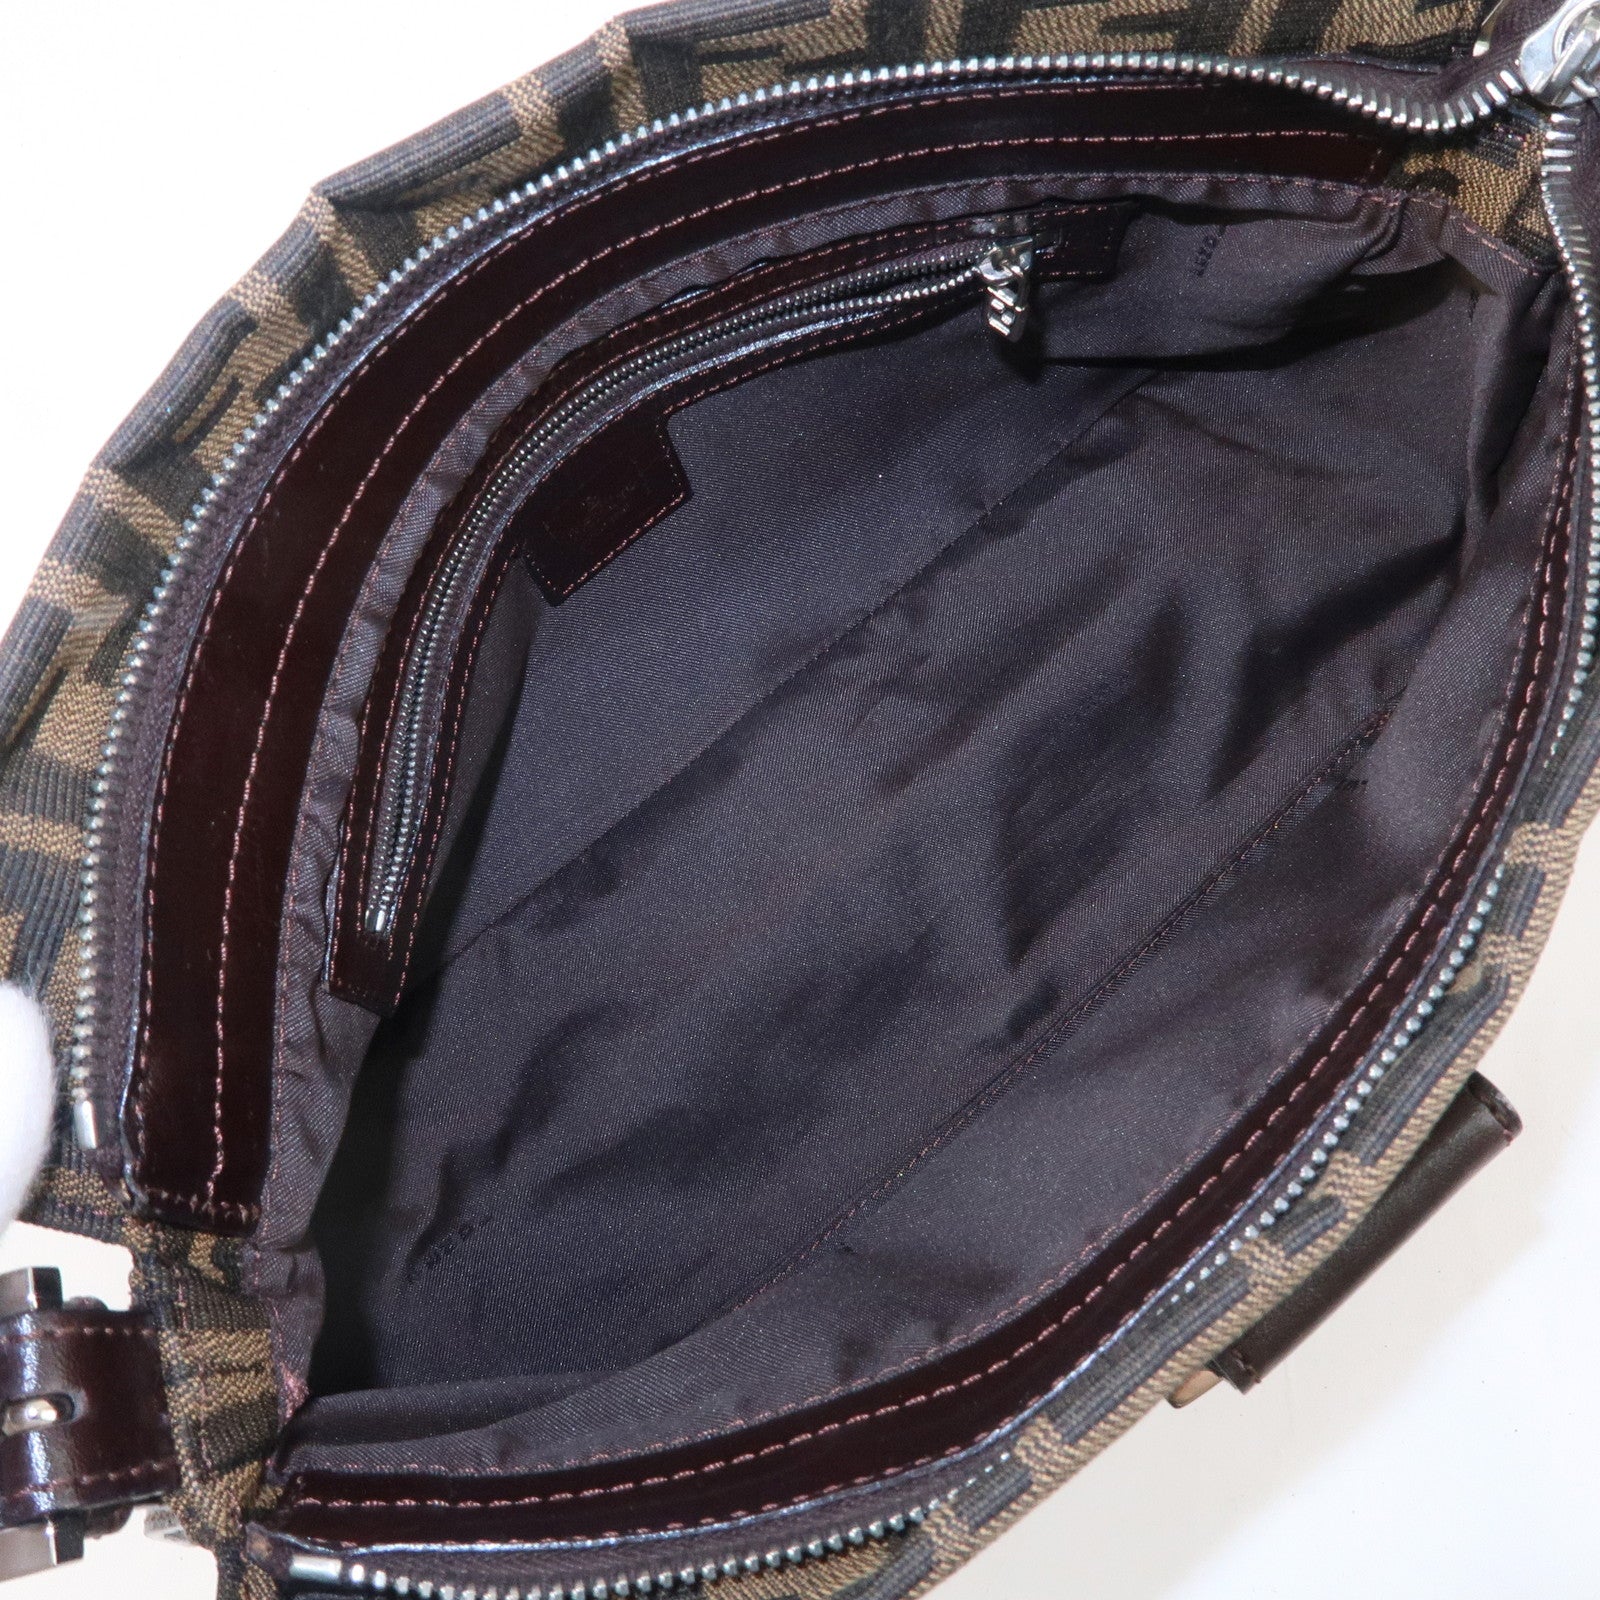 FENDI-Zucca-Canvas-Leather-Shoulder-Bag-Beige-Brown-09161151001